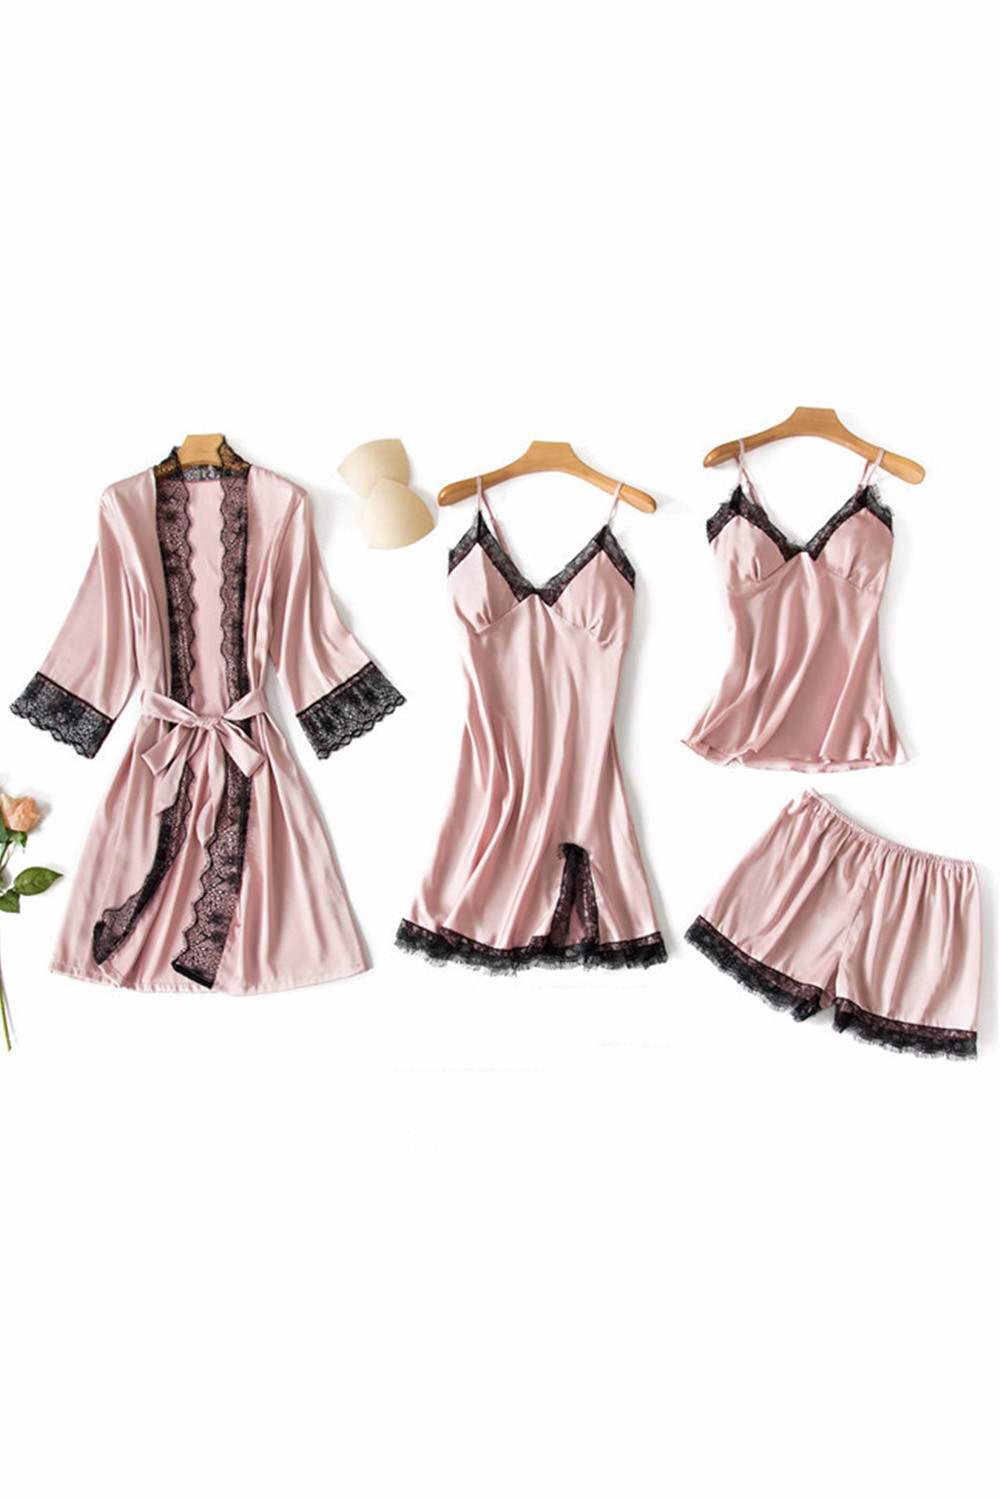 US$16.9 Peach 4PCS Lace Lingerie Nightwear Satin Sleepwear Dress ...